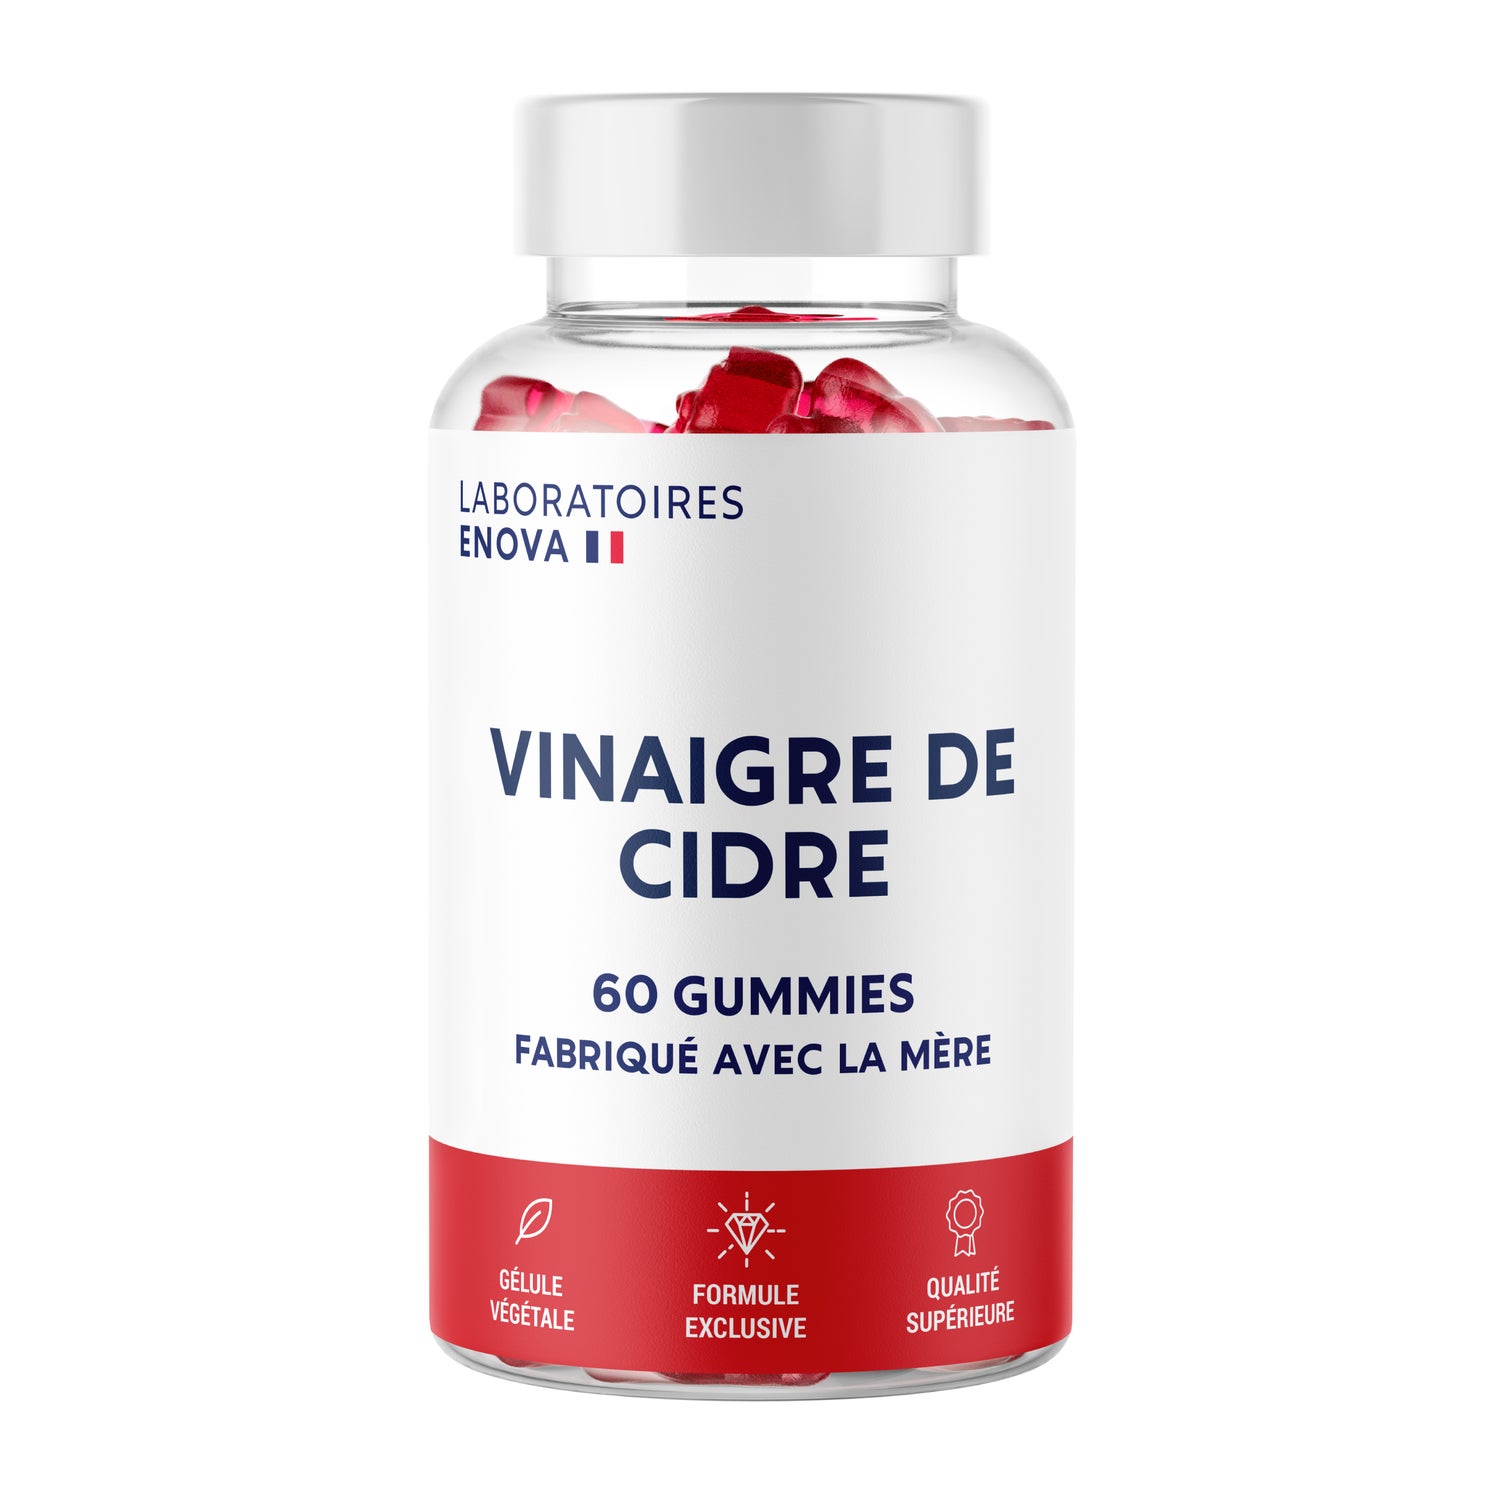 VINAIGRE DE CIDRE - 60 gélules